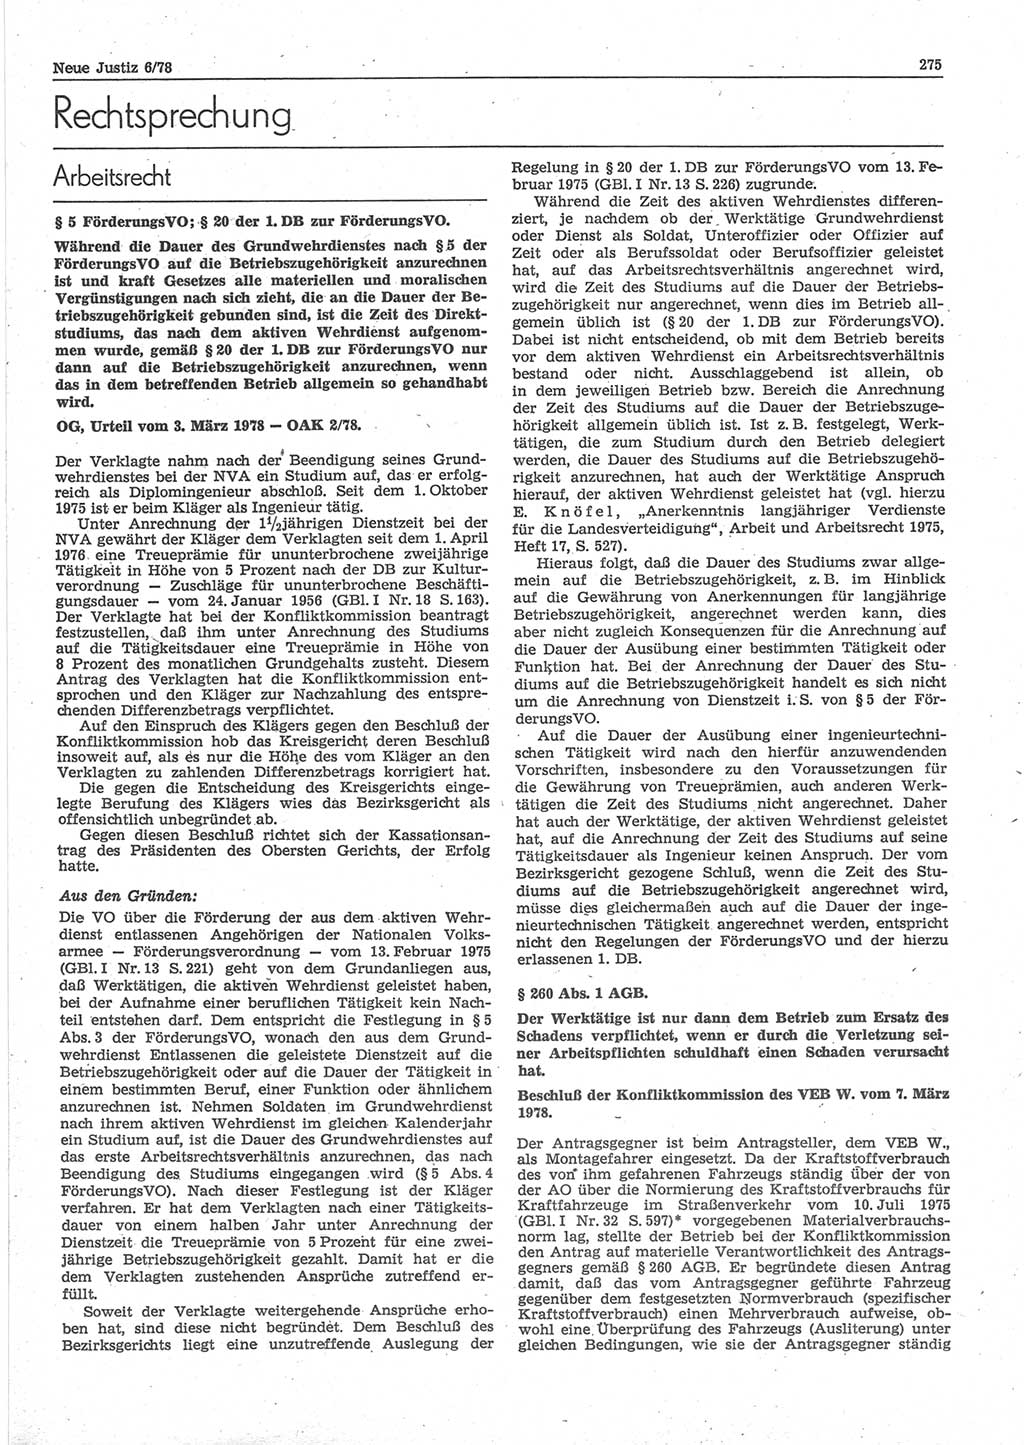 Neue Justiz (NJ), Zeitschrift für sozialistisches Recht und Gesetzlichkeit [Deutsche Demokratische Republik (DDR)], 32. Jahrgang 1978, Seite 275 (NJ DDR 1978, S. 275)